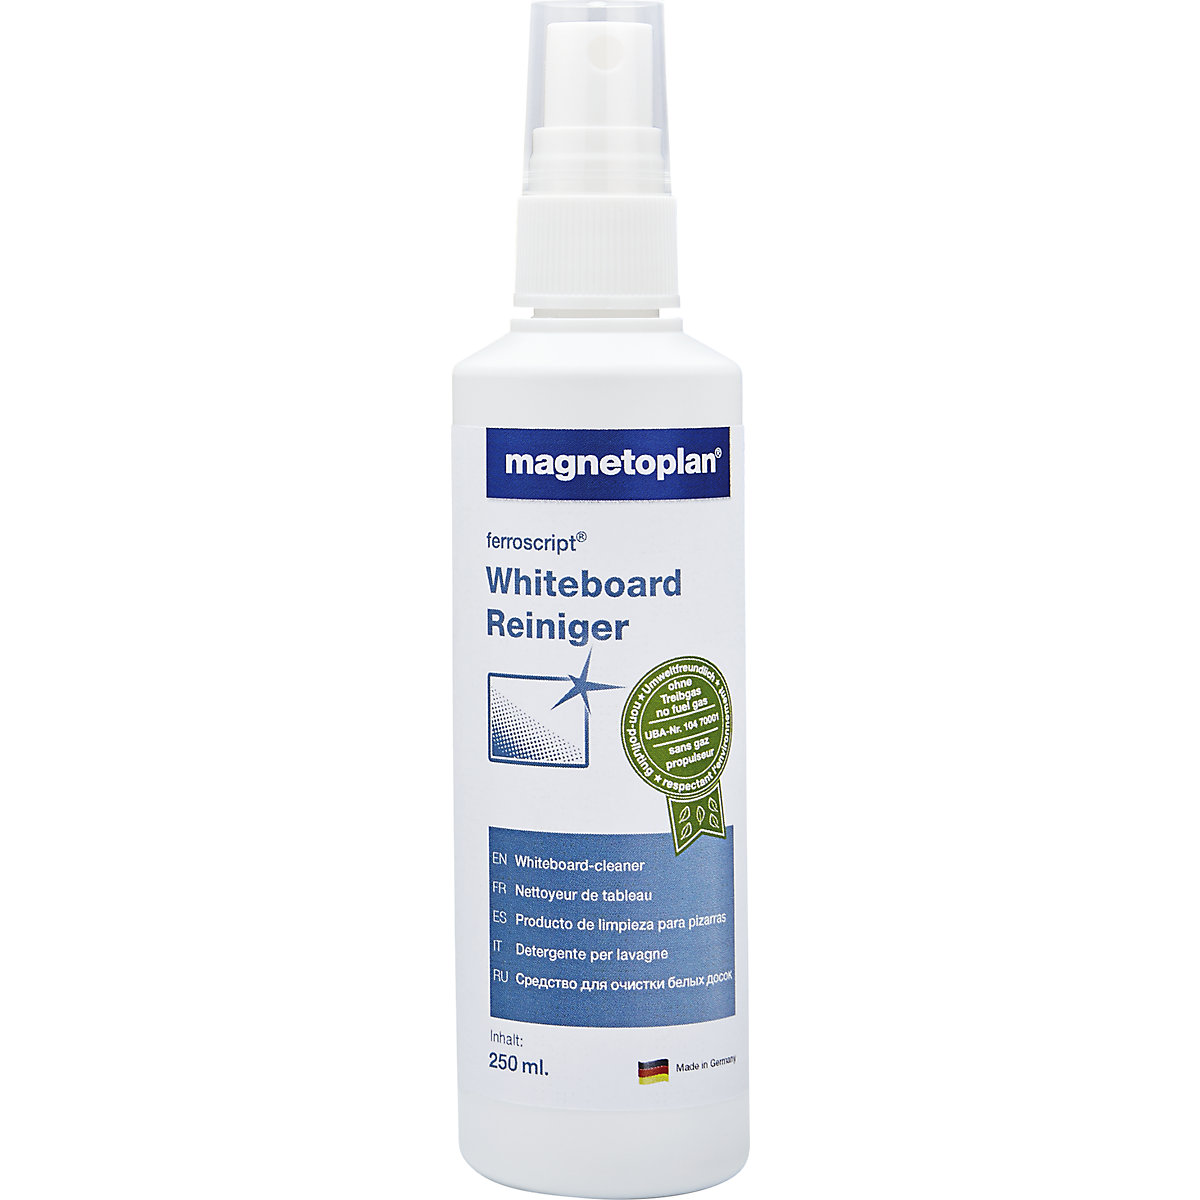 magnetoplan – Detergent pentru panou whiteboard ferroscript®